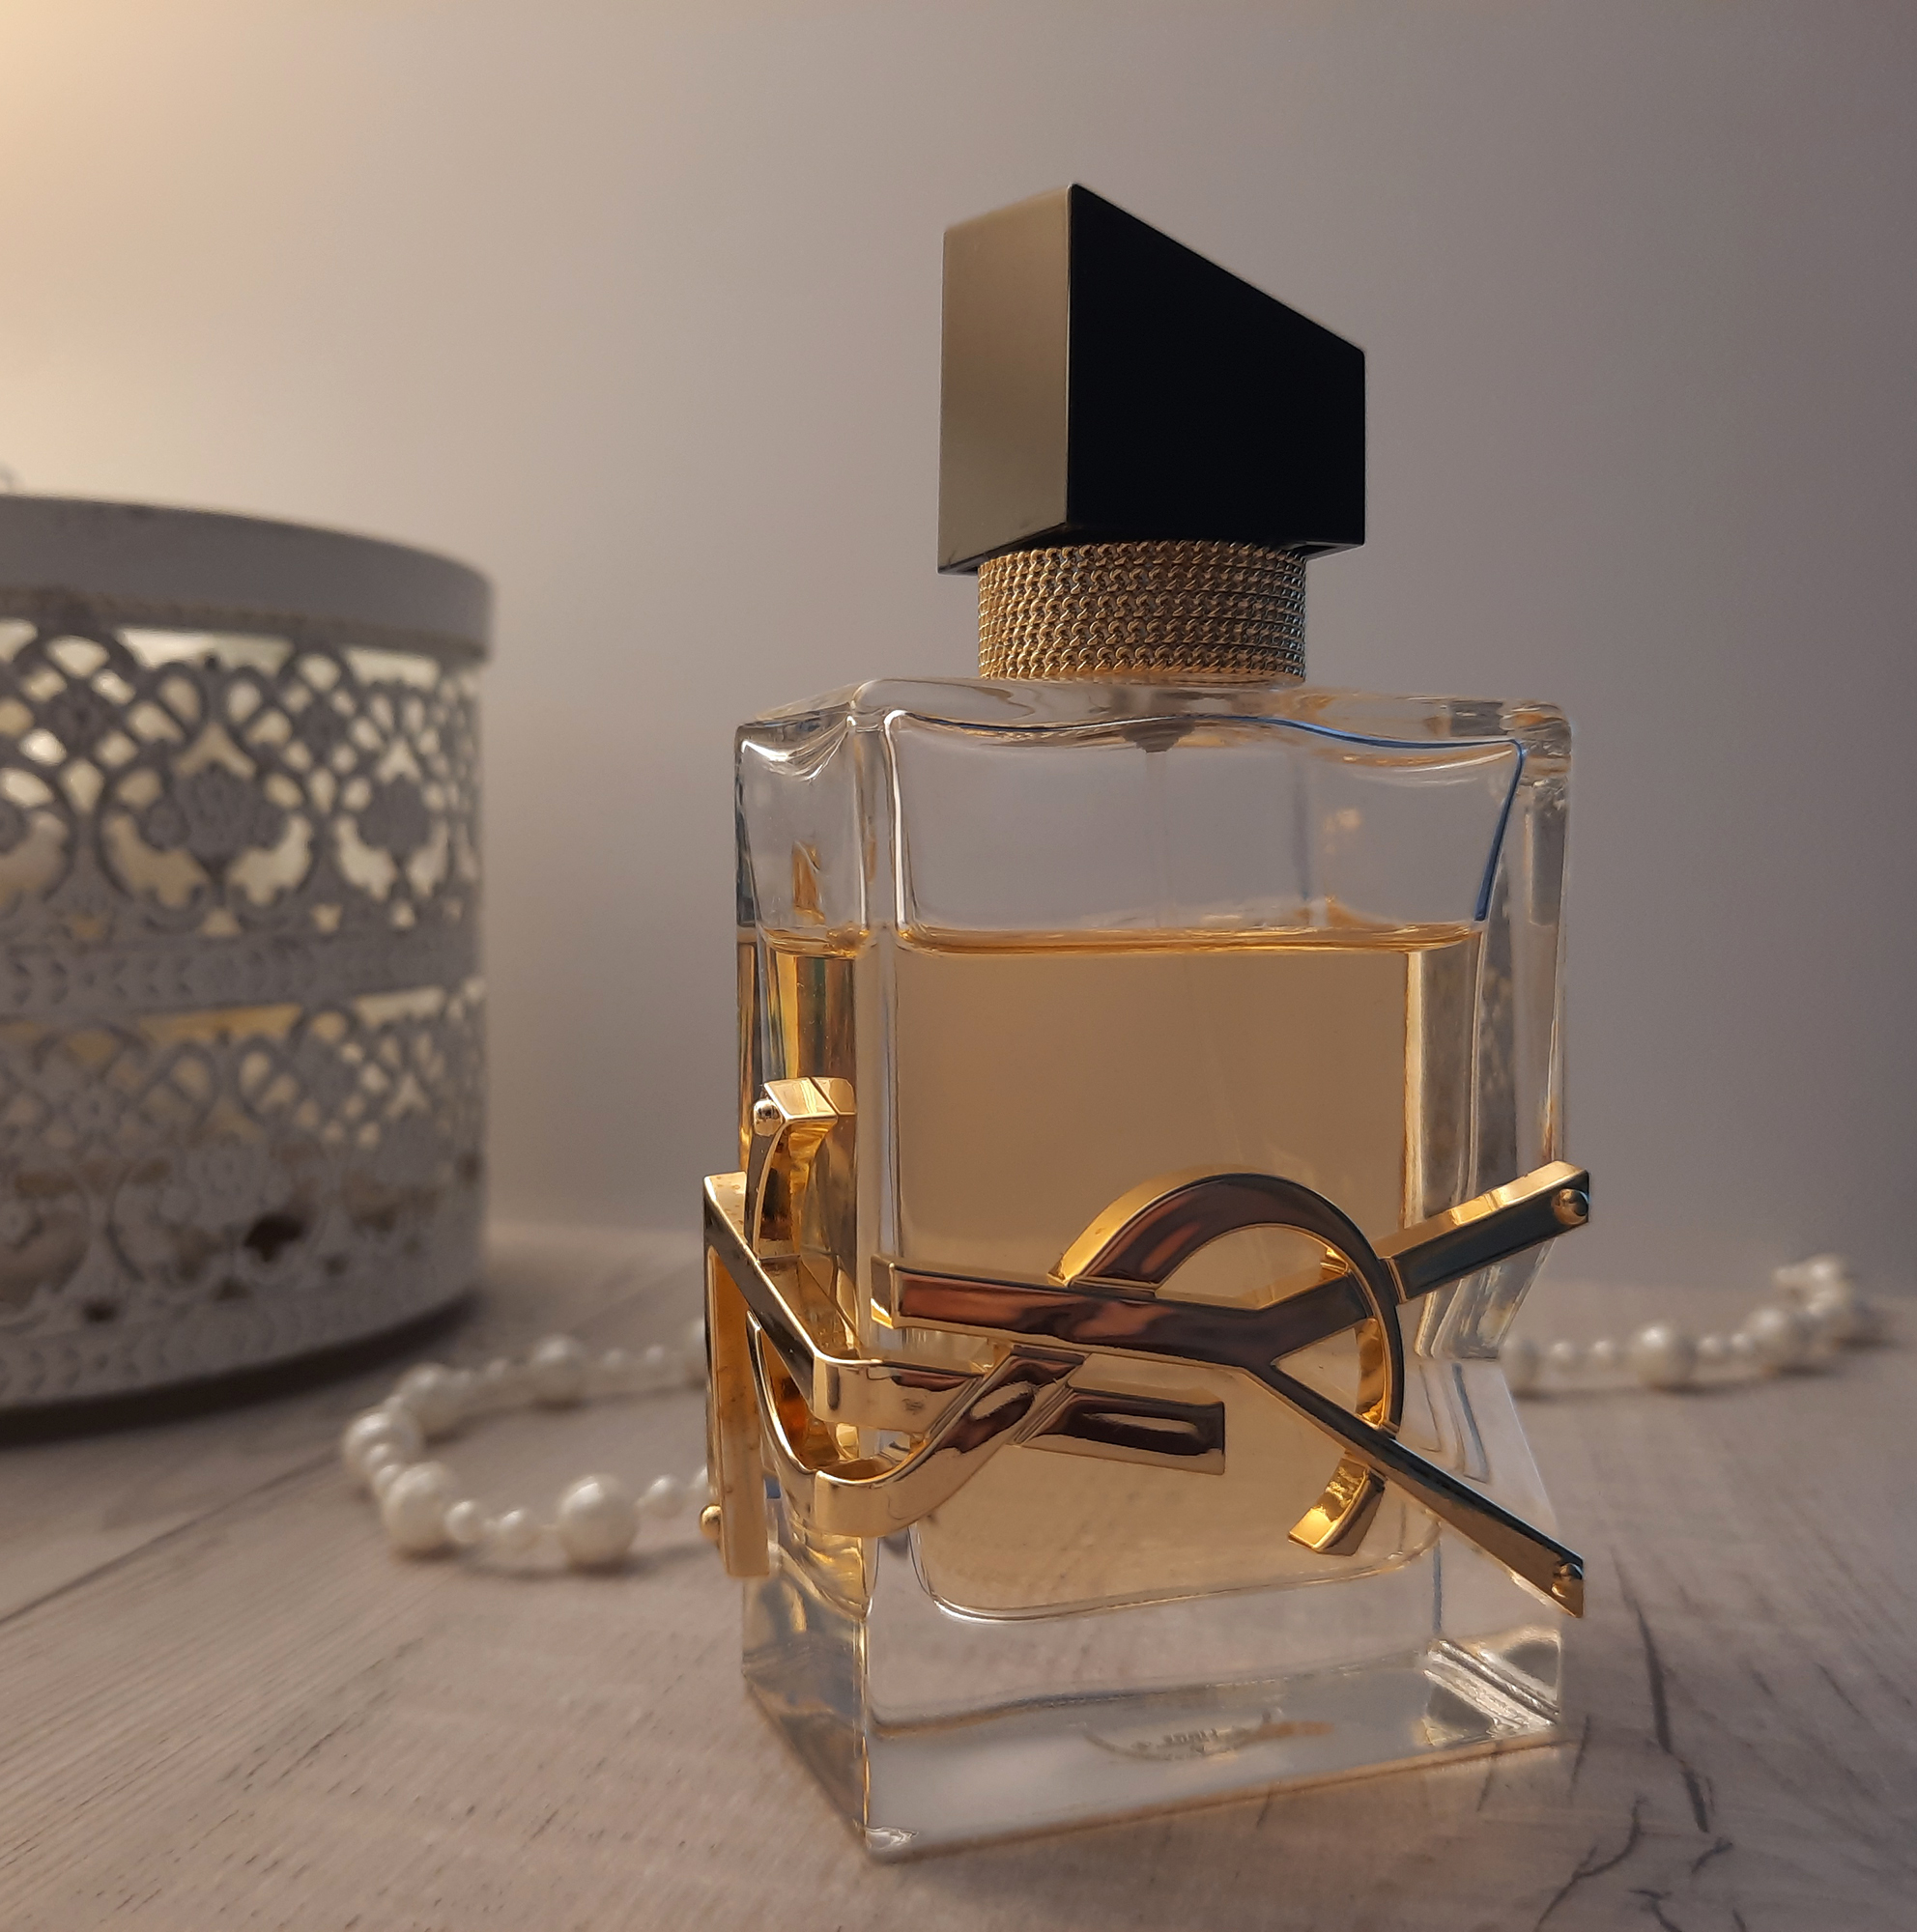 Yves Saint Laurent Libre: парфуми на кожен день